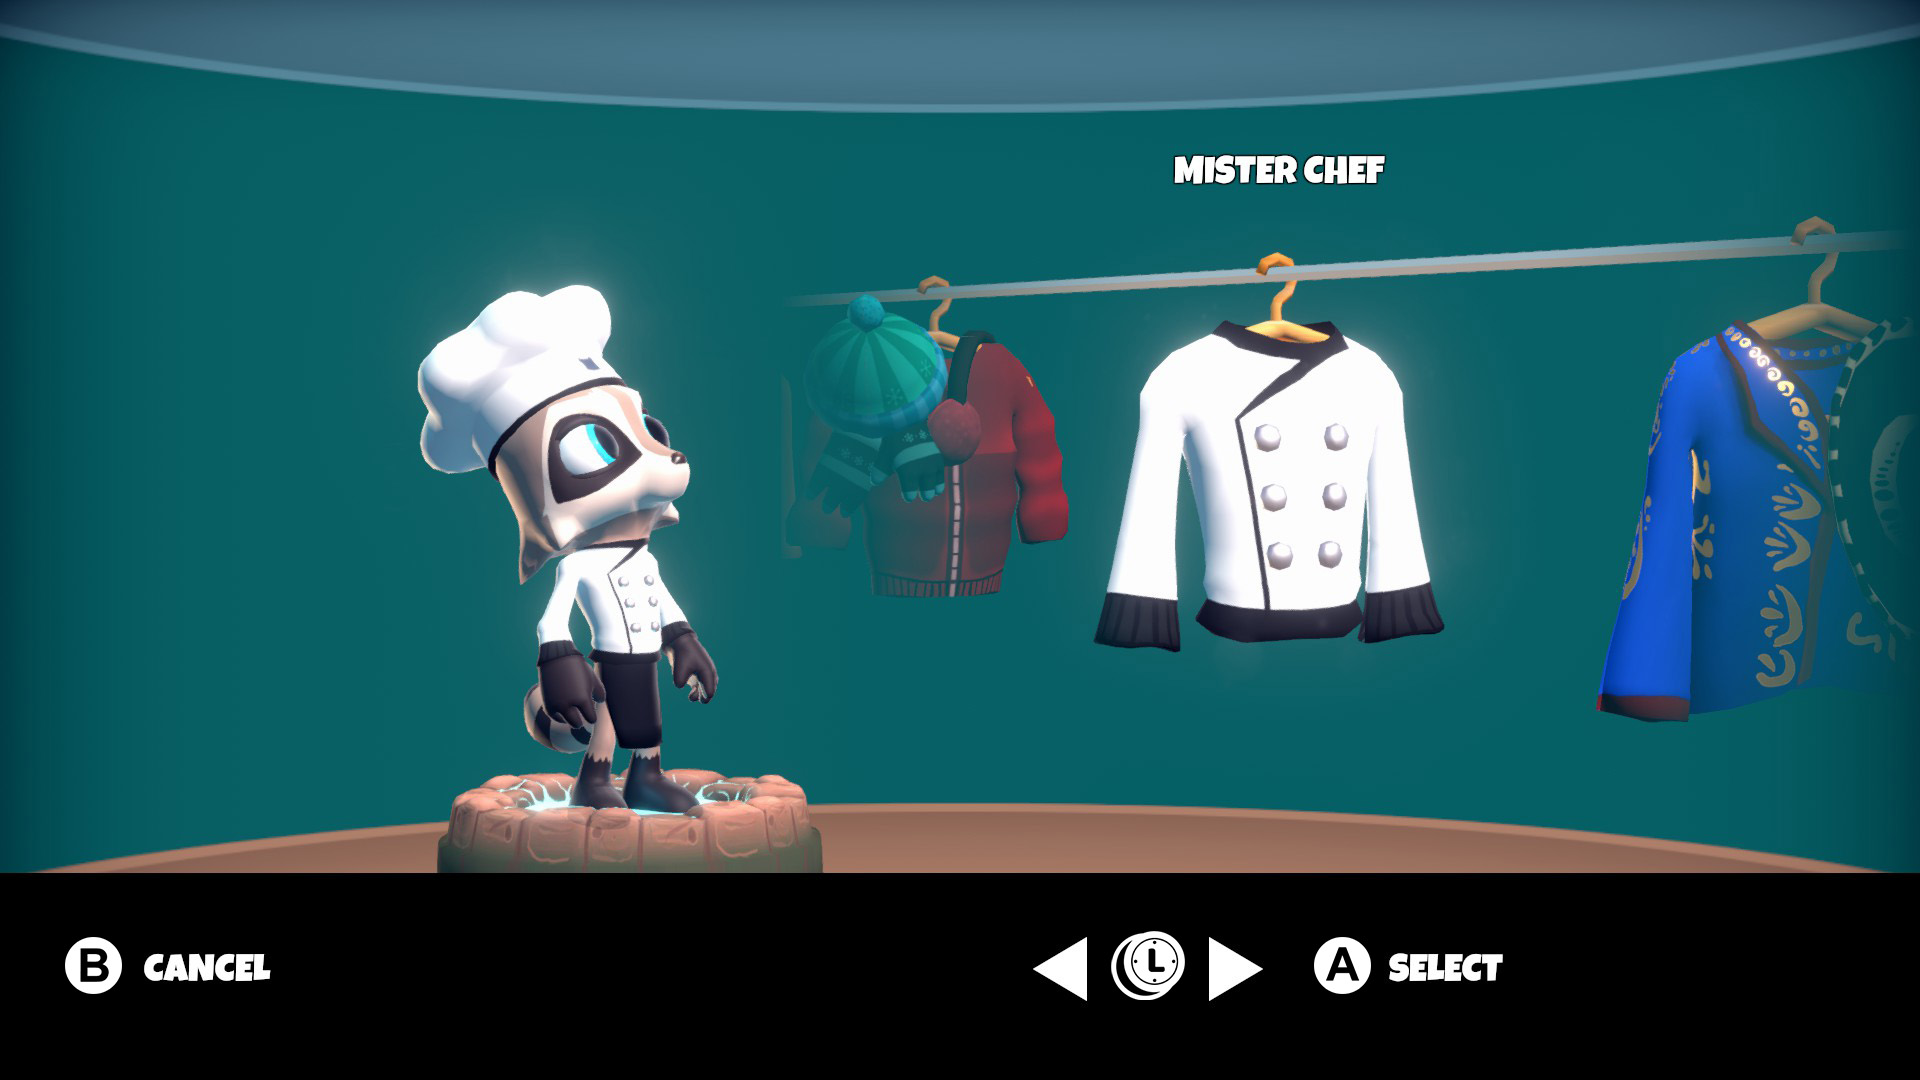 RV chef costume